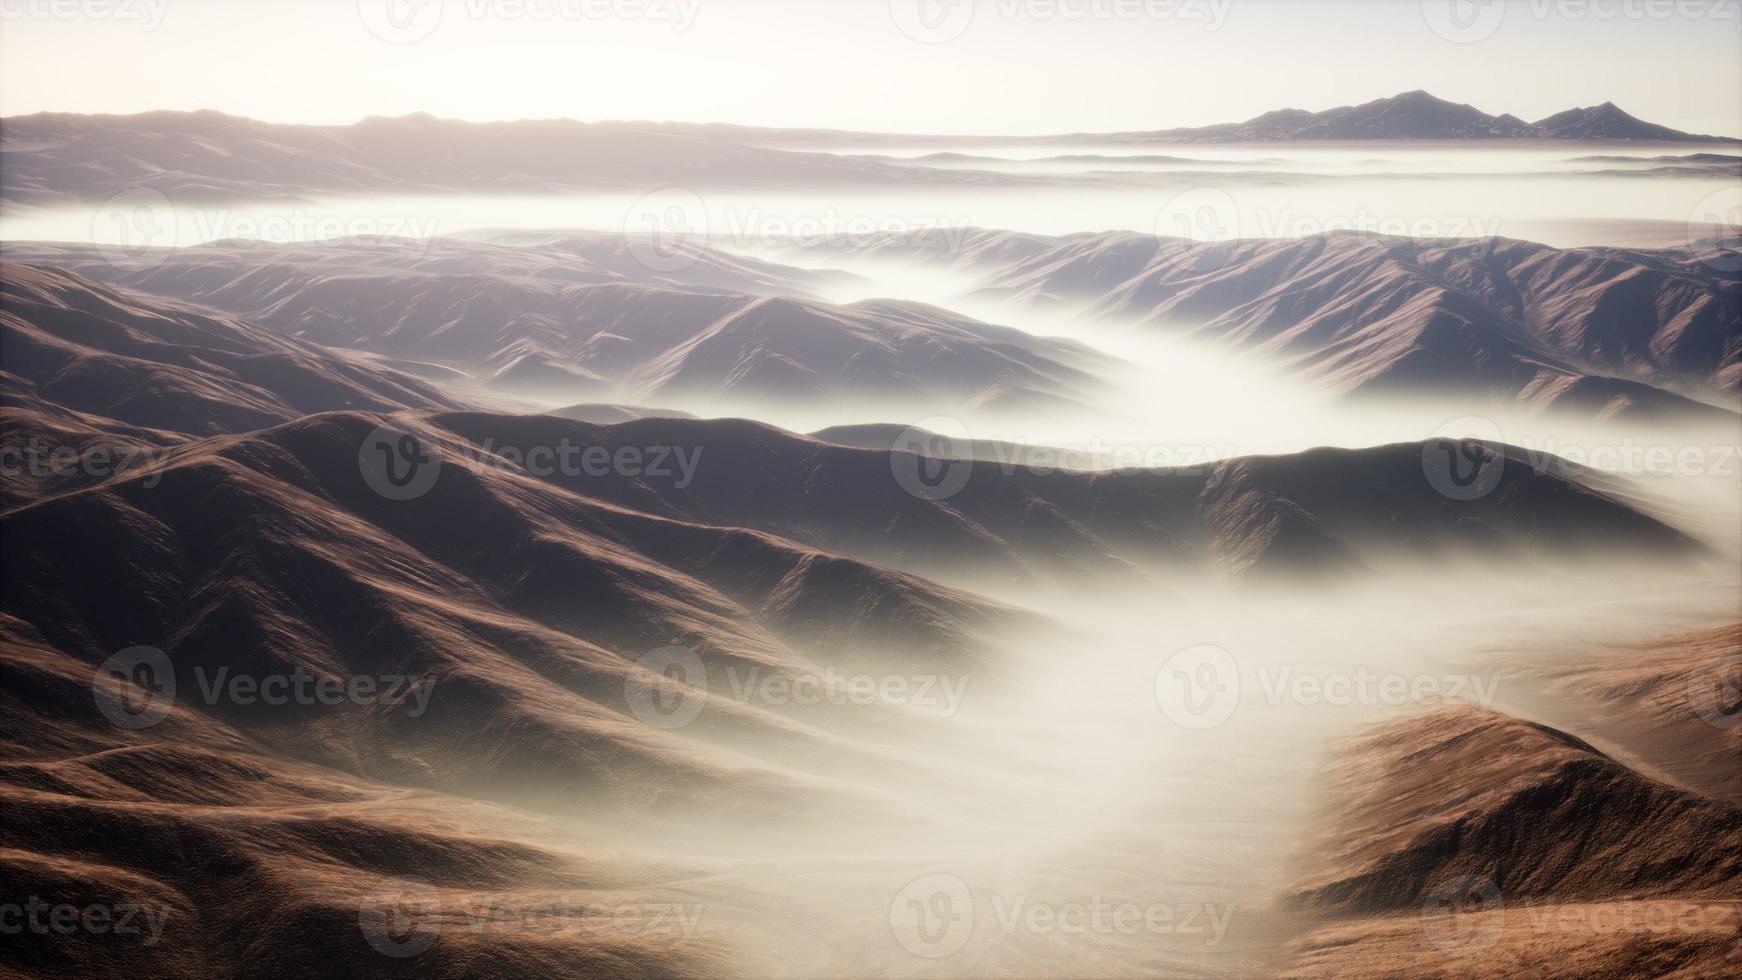 paisaje de montaña con niebla profunda en la mañana foto